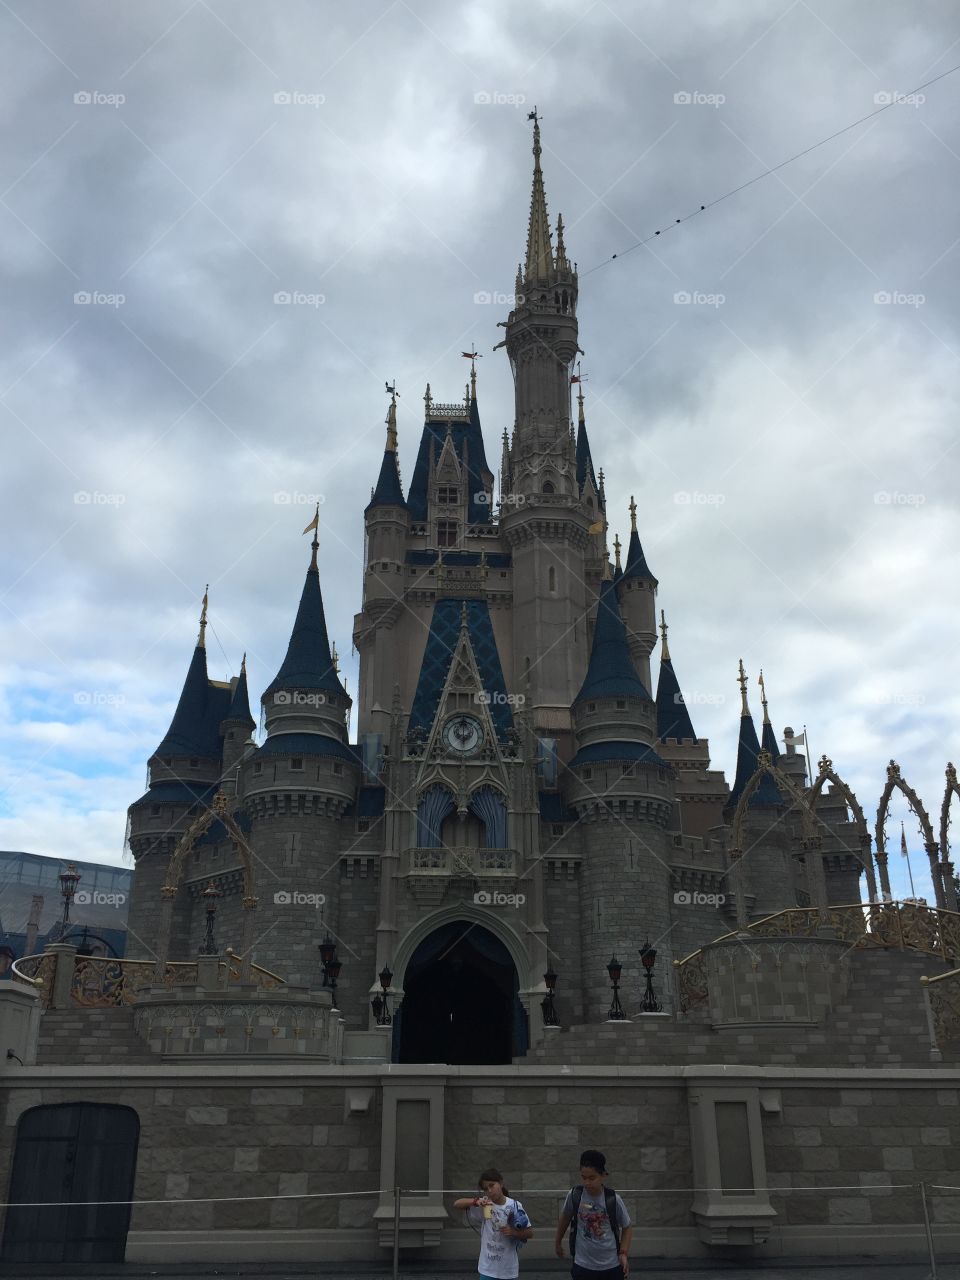 Cinderella's Castle - Front View